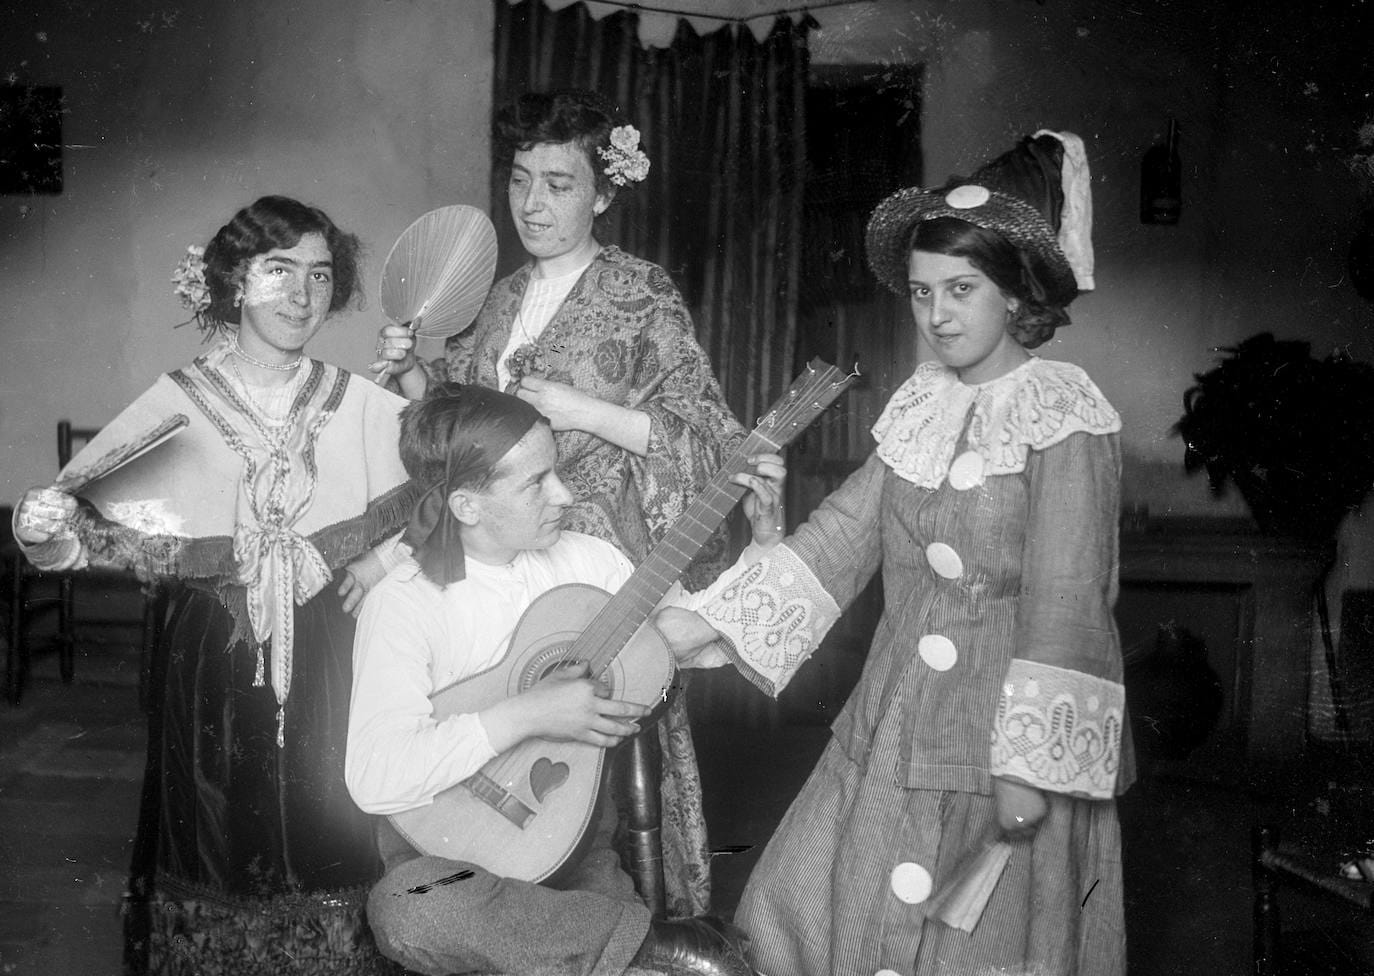 Fotografía de carnavales en 1913, con José Alfaro disfrazado de navarro con guitarra junto a su novia Elisa y dos hermanas de ella.